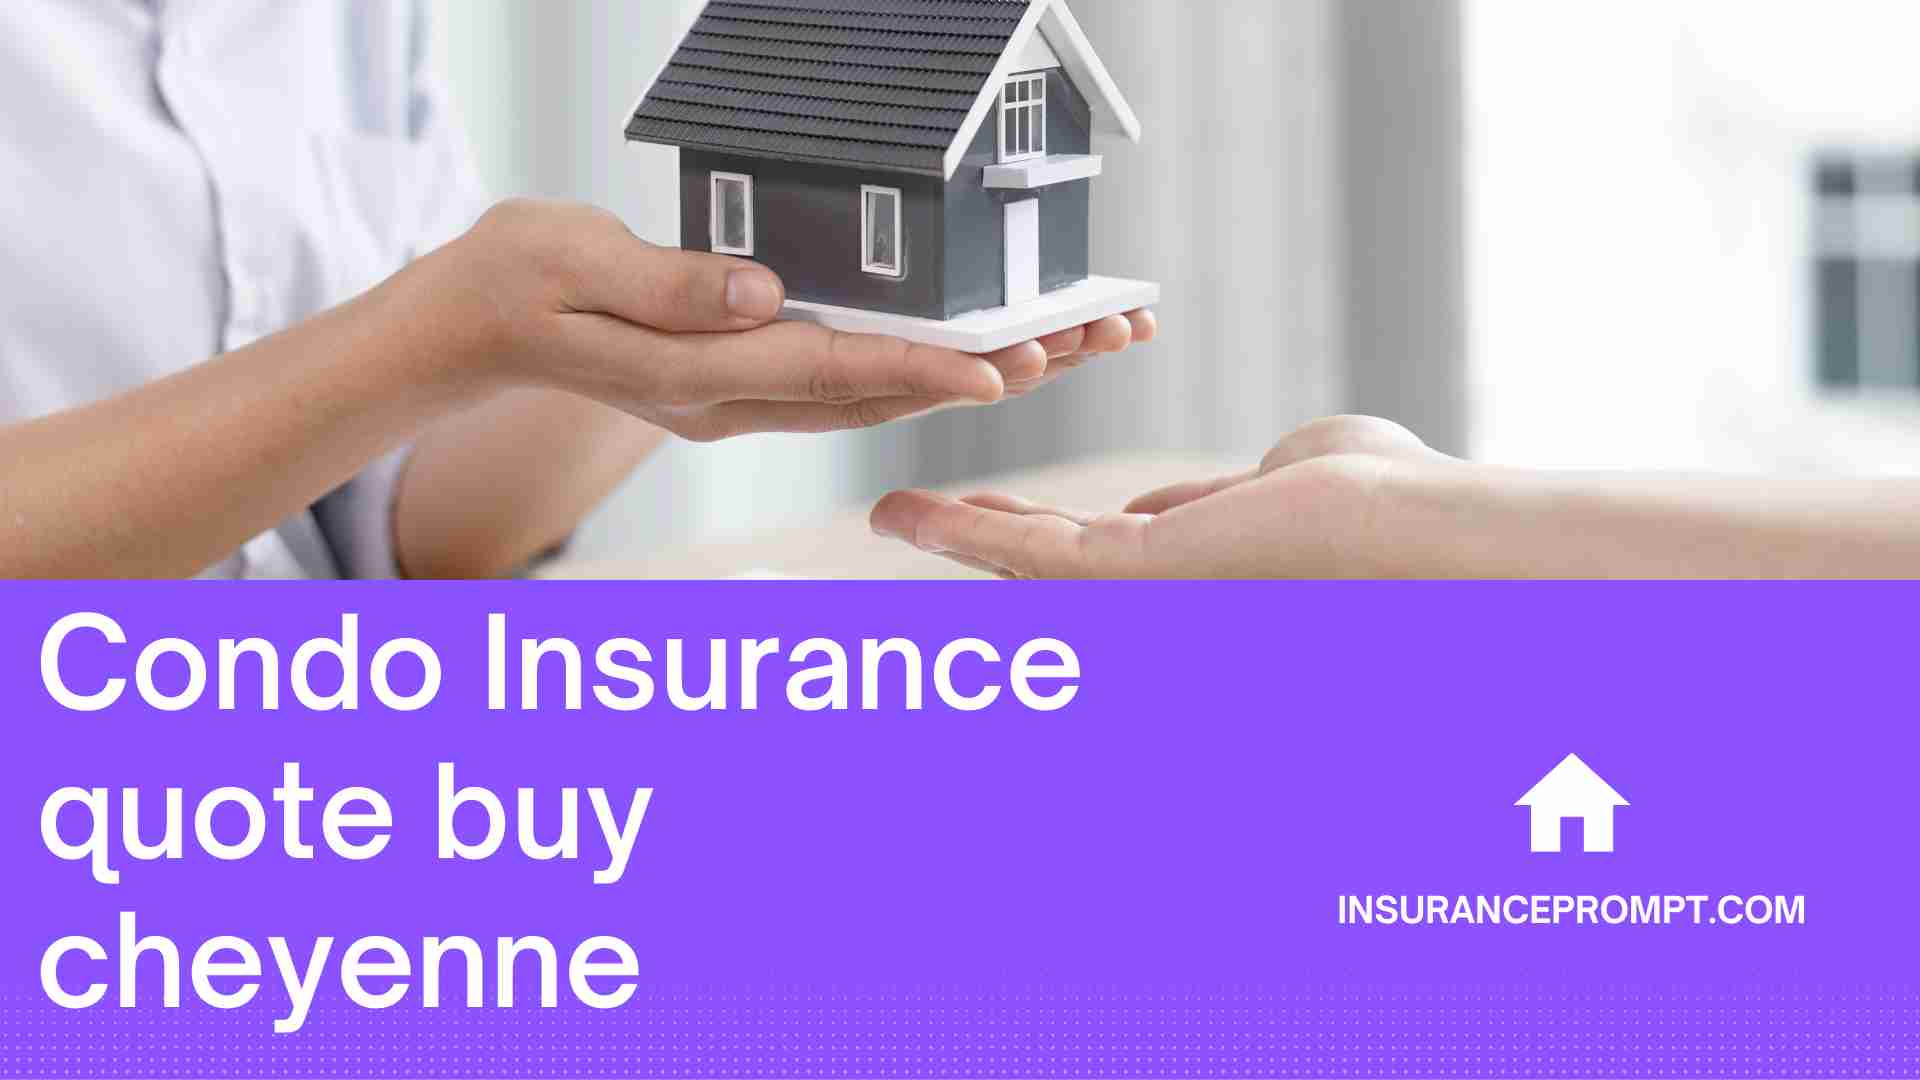 Condo Insurance Quote Buy Cheyenne